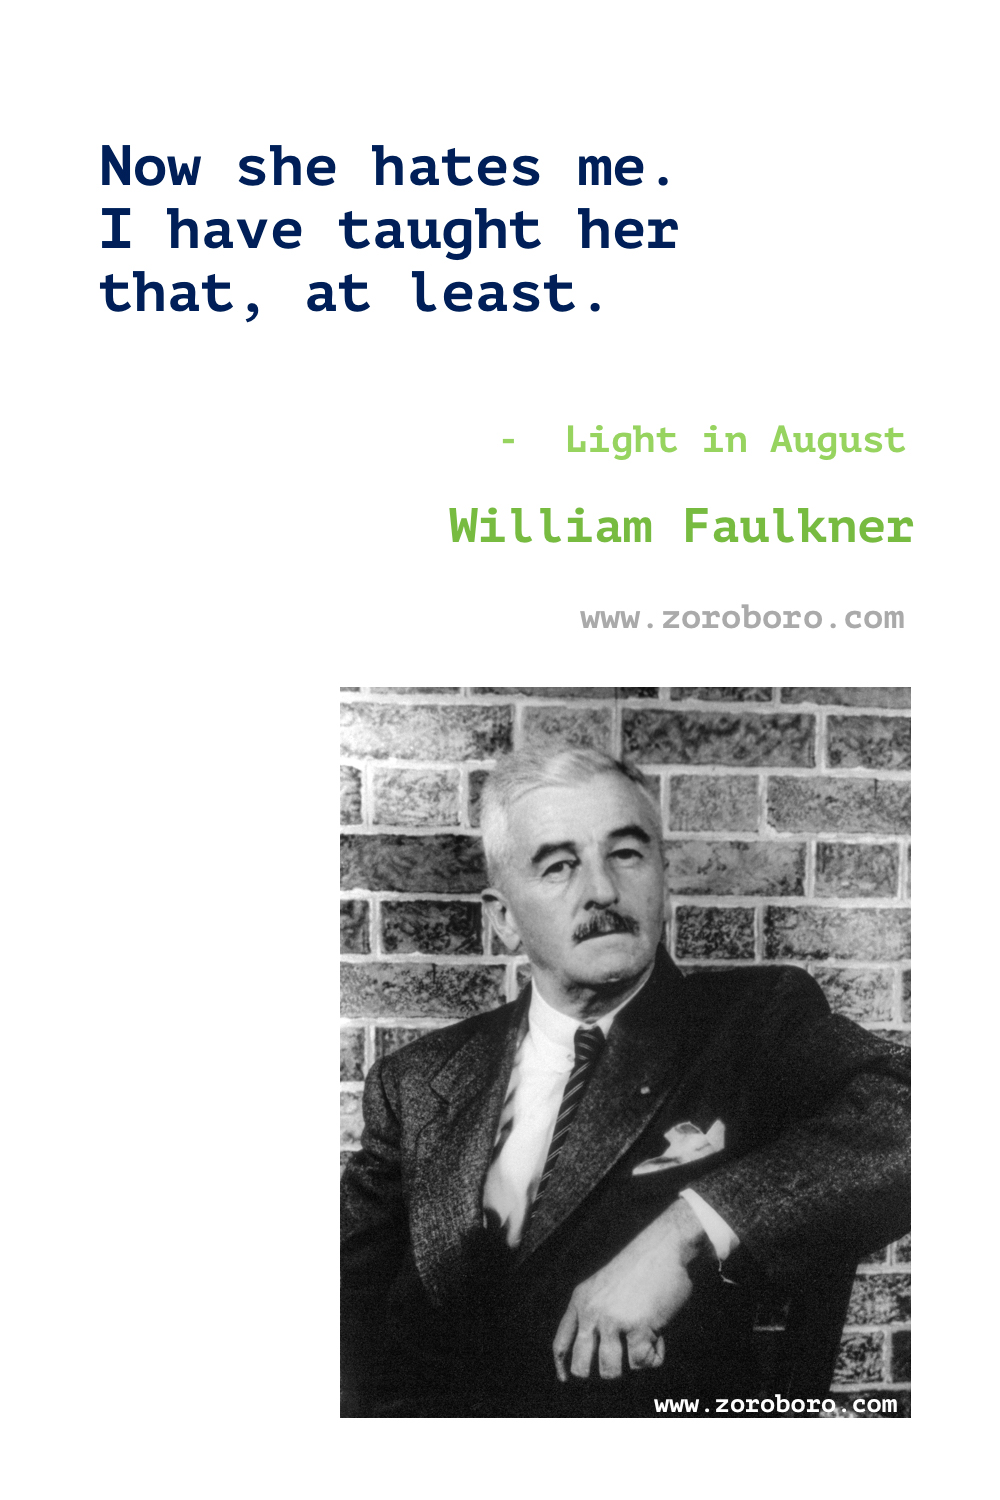 William Faulkner Quotes. William Faulkner Books Quotes. William Faulkner Writing.William Faulkner The sound and the fury Quotes. William Faulkner Poems. William Faulkner Quotes.